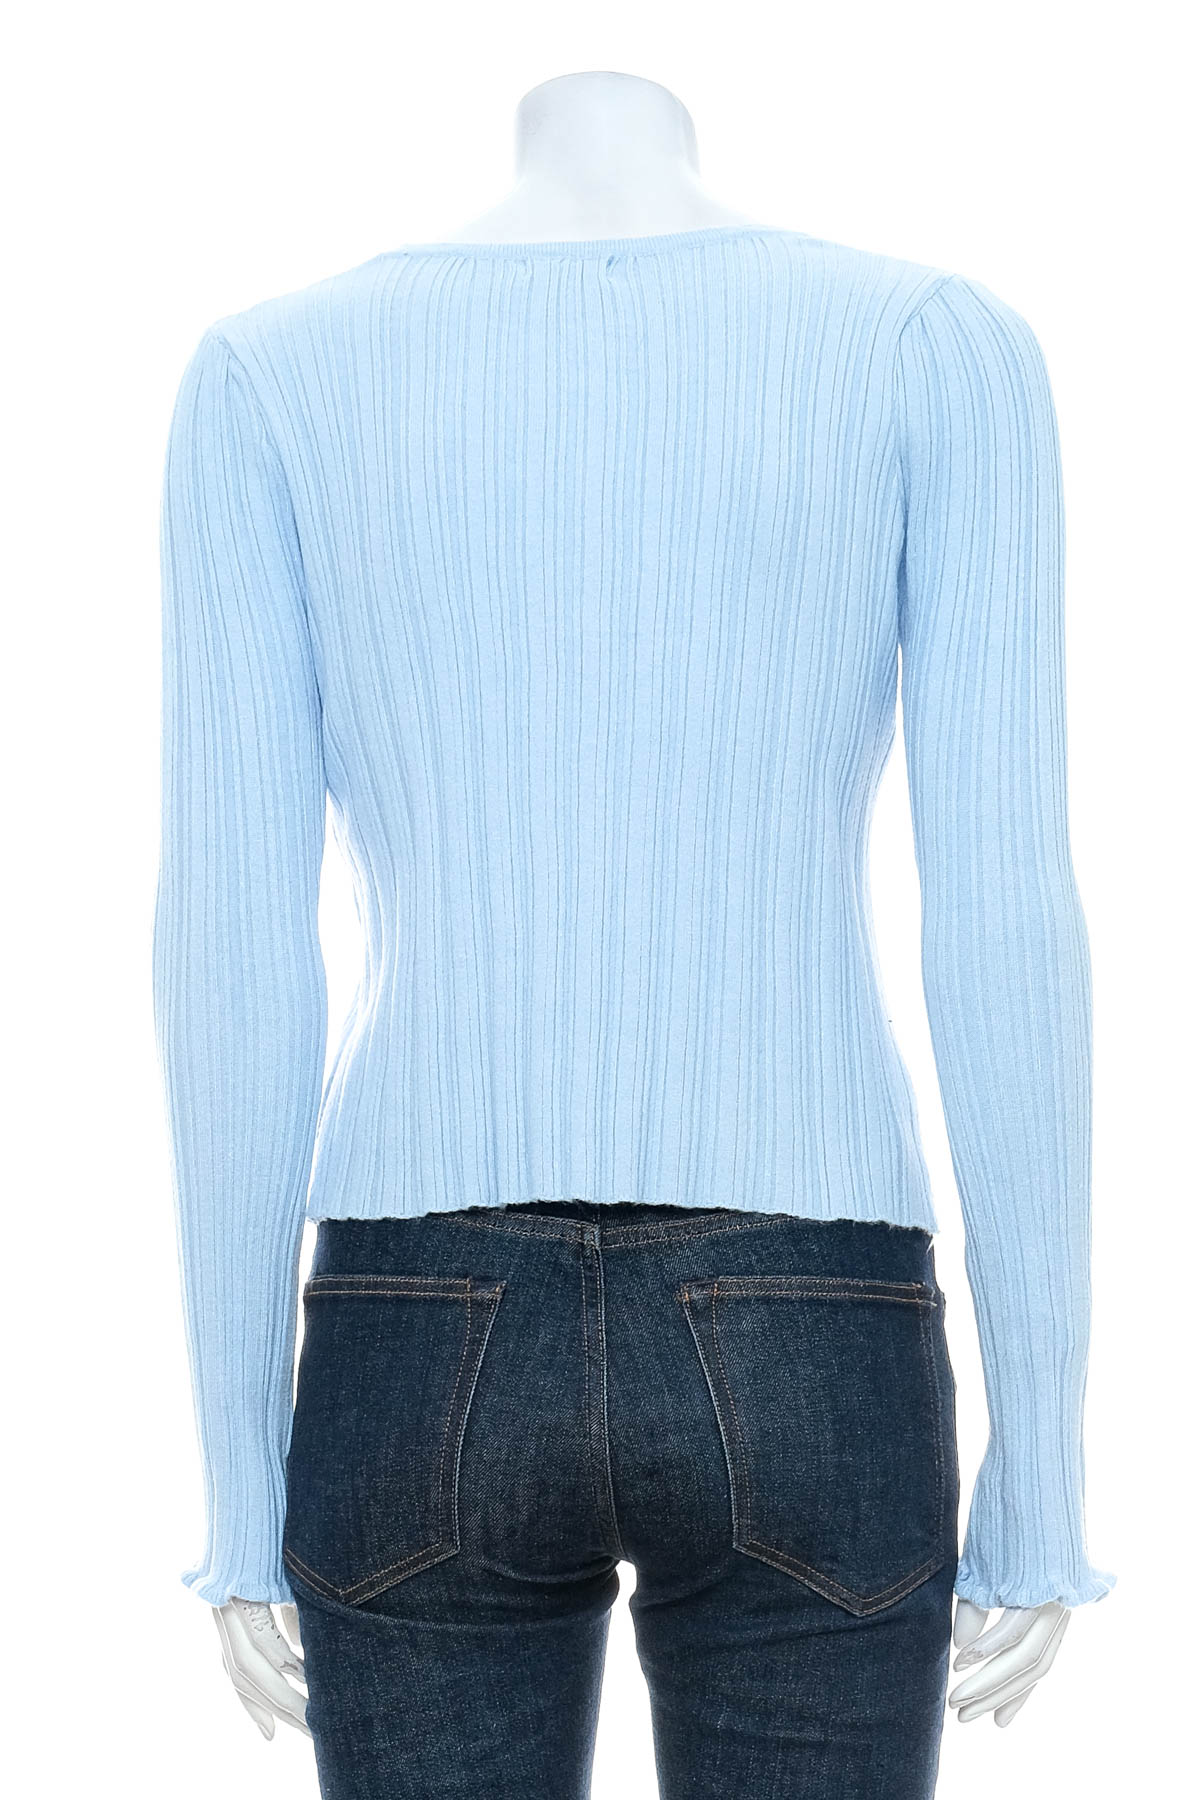 Women's sweater - Valleygirl - 1